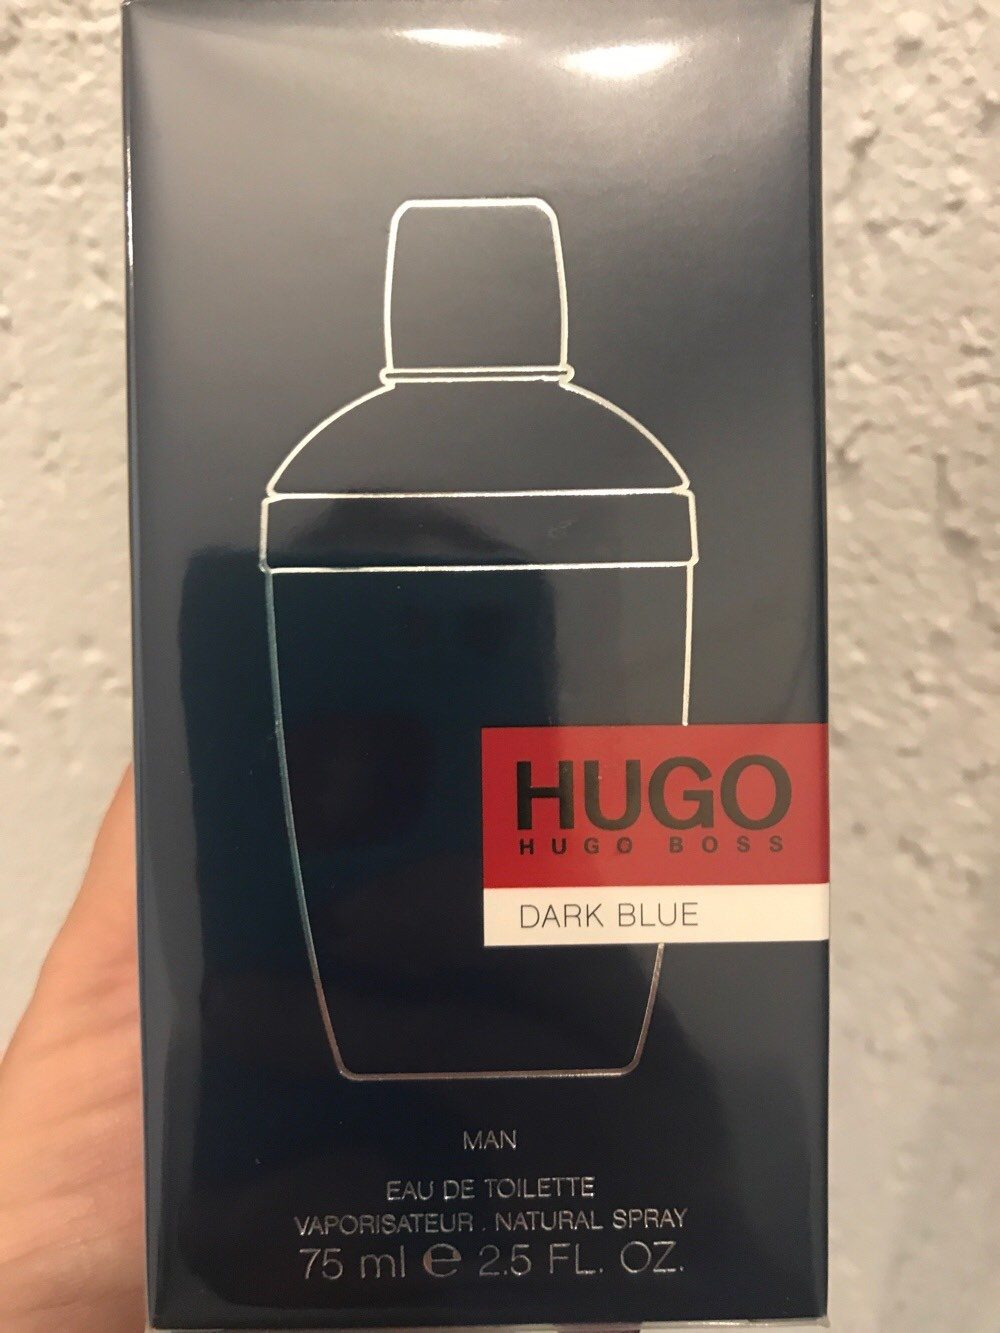 Hugo Boss dark Blue - Produto - de